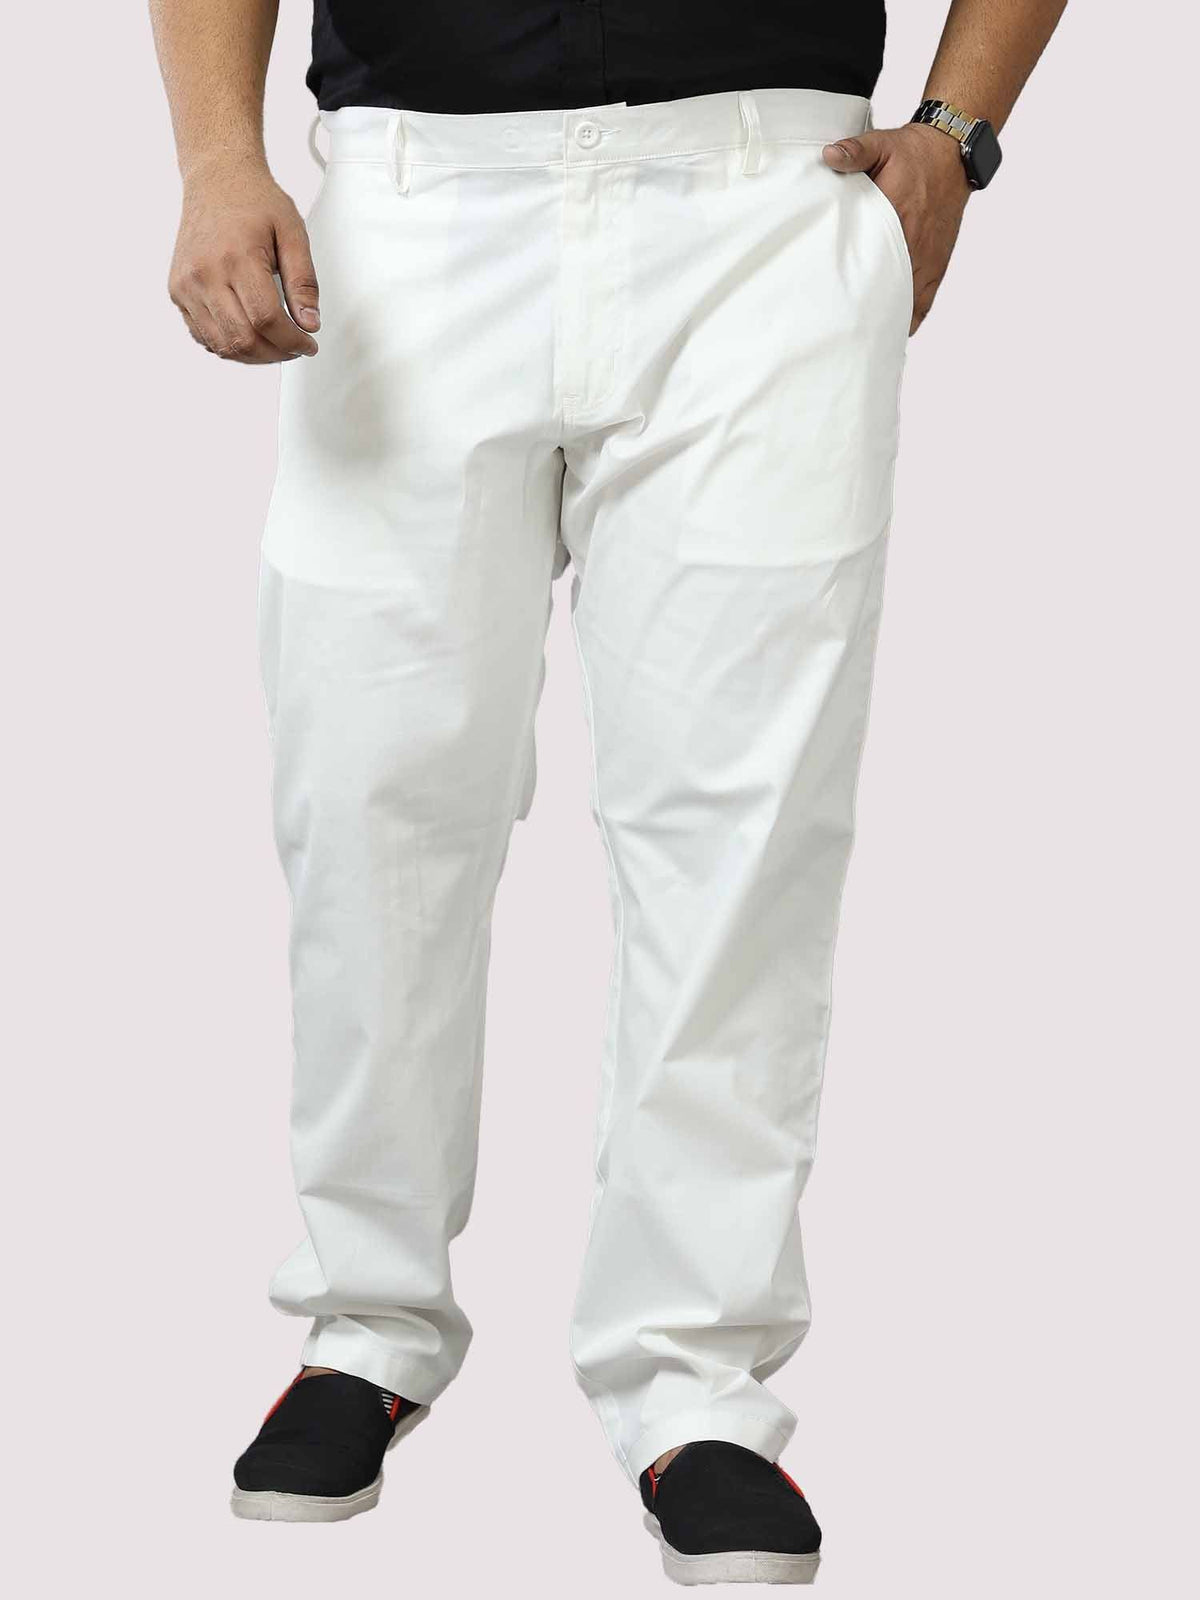 White Twill Lycra Trouser Men's Plus Size - Guniaa Fashions